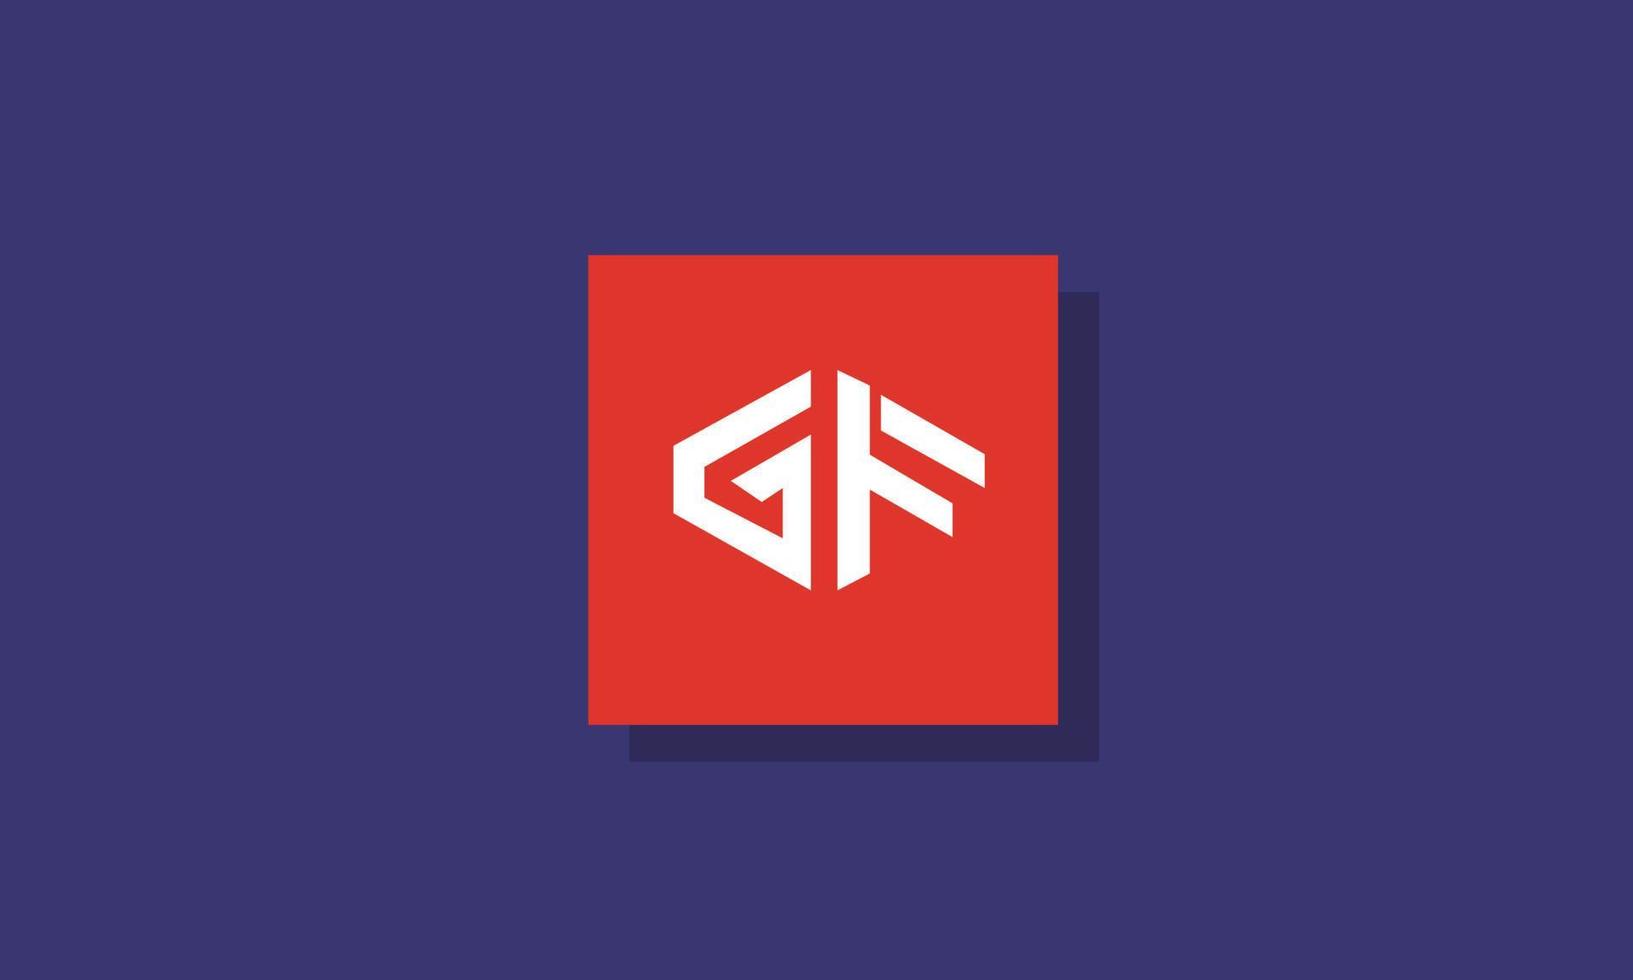 letras del alfabeto iniciales monograma logo gf, fg, g y f vector